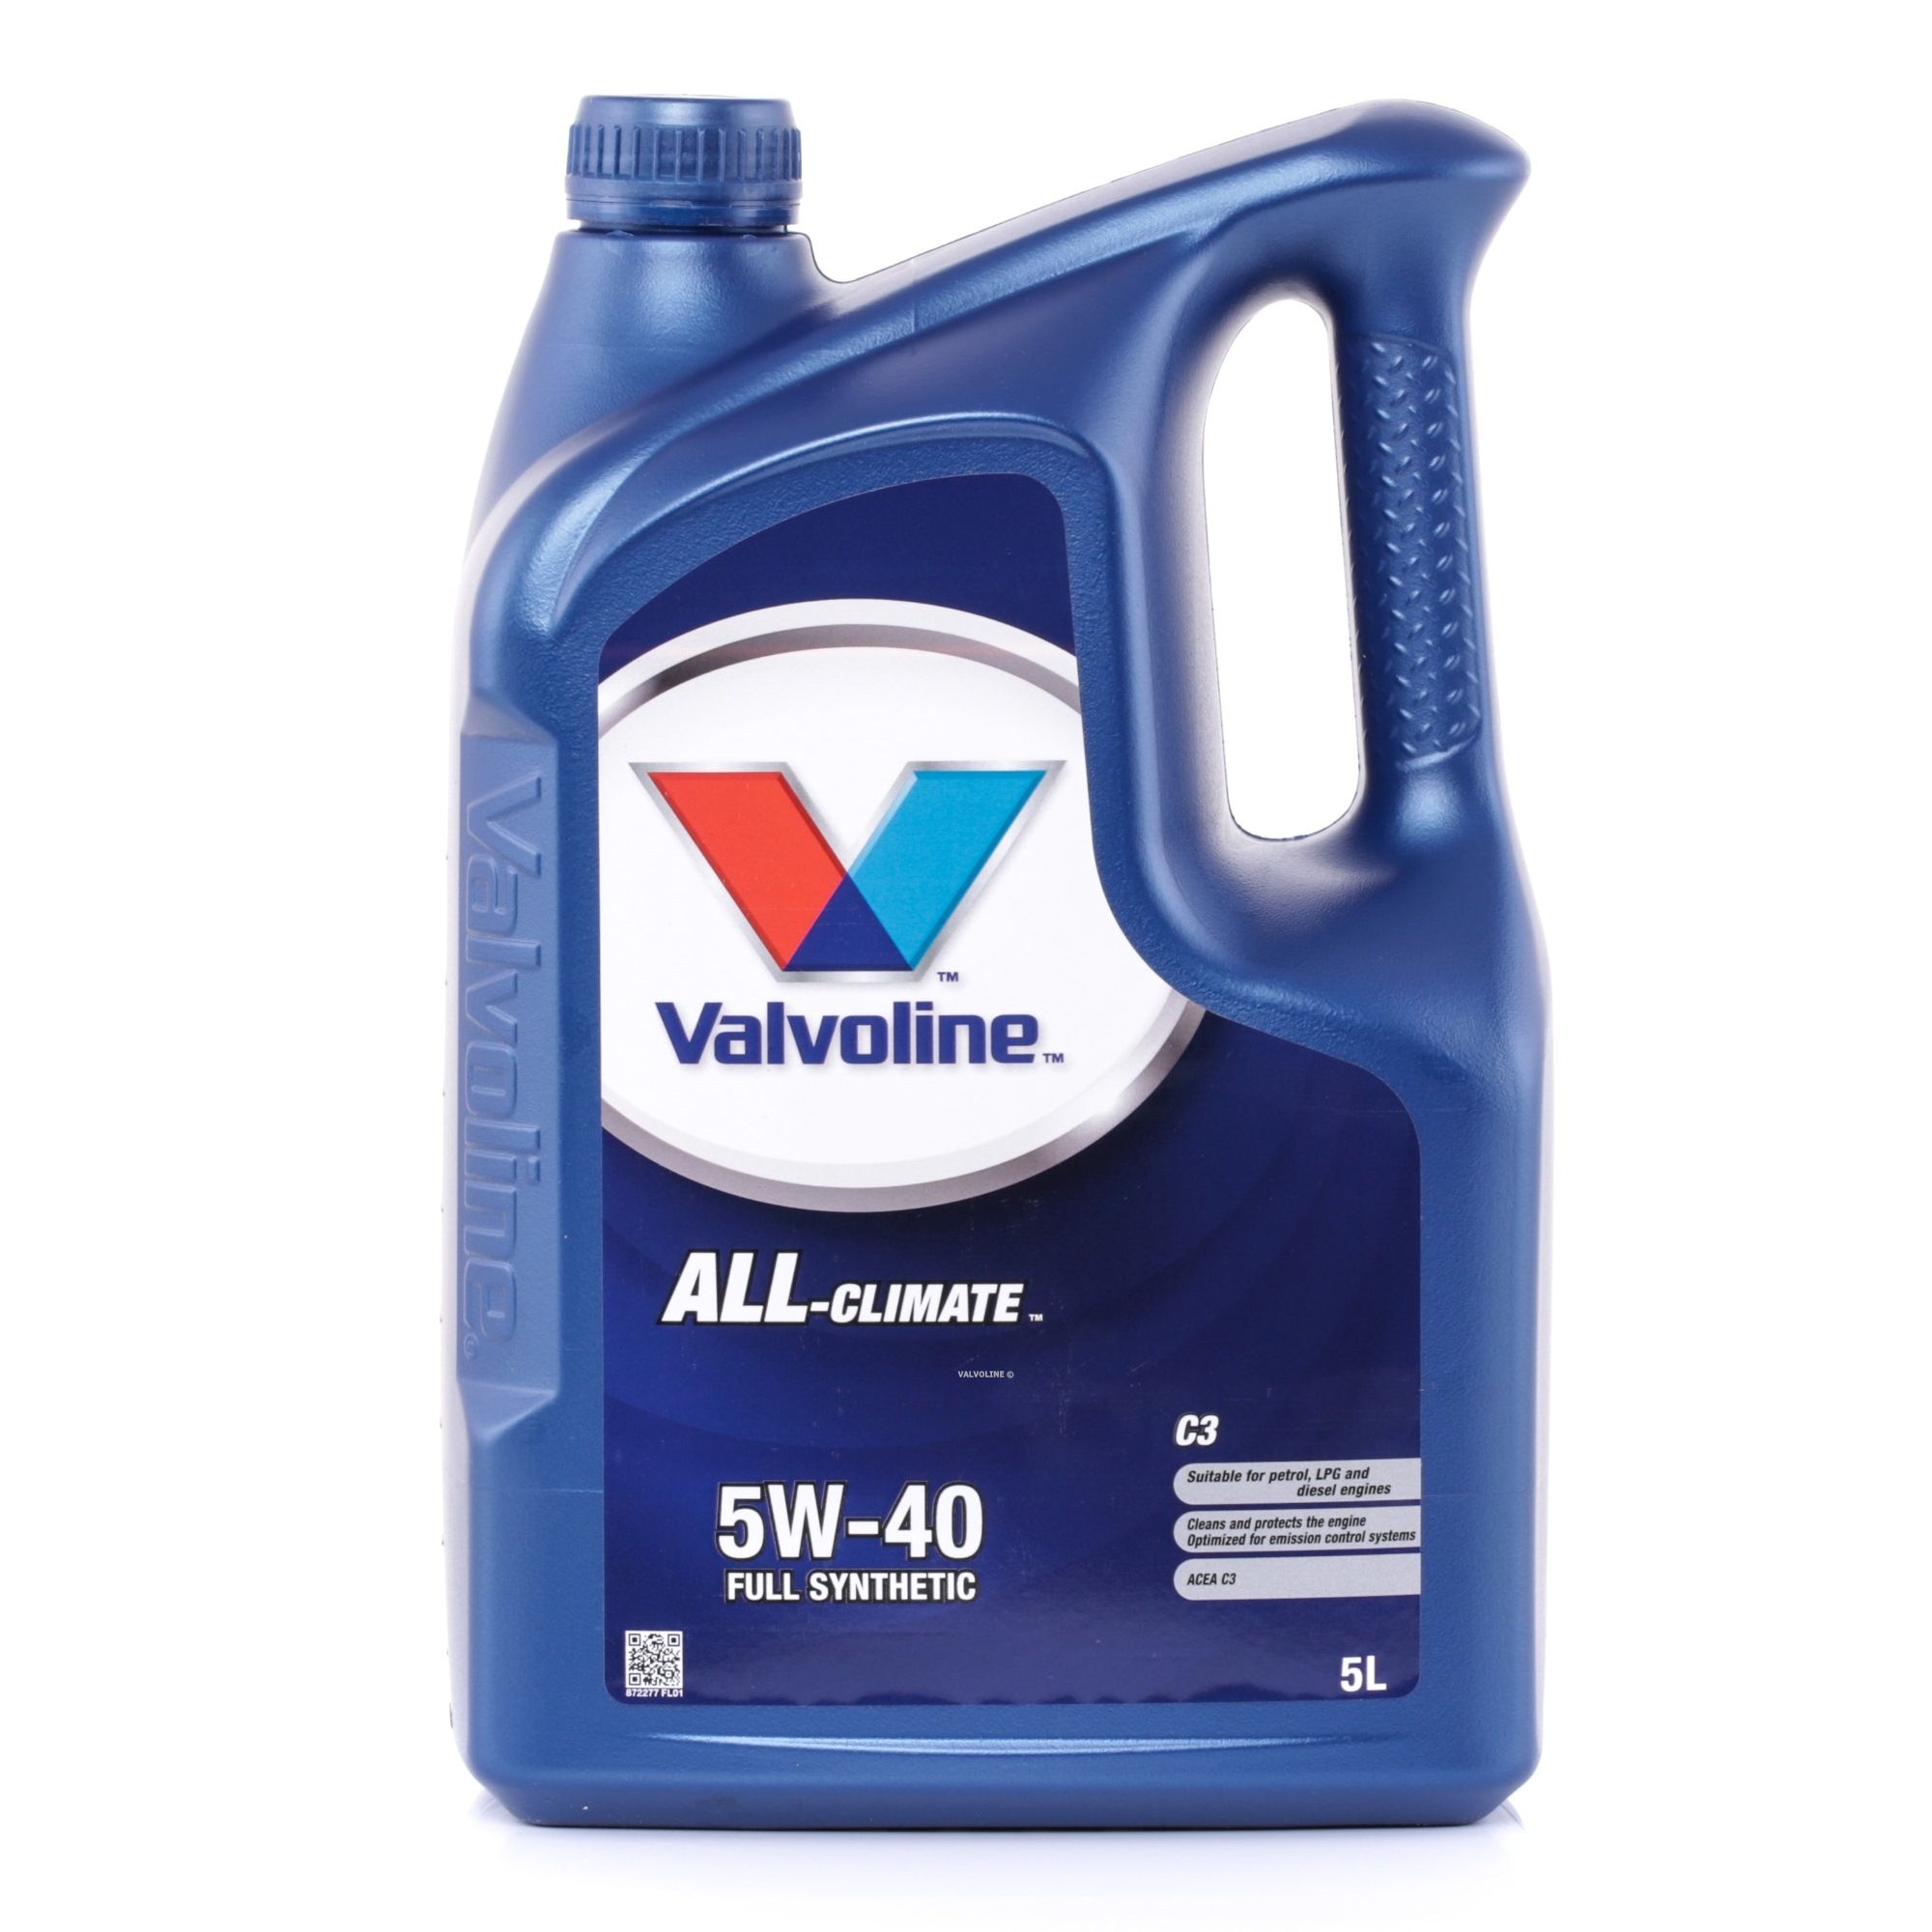 Valvoline All-Climate, C3 5W-40, 5L, Synthetische olie Olie 872277 koop goedkoop